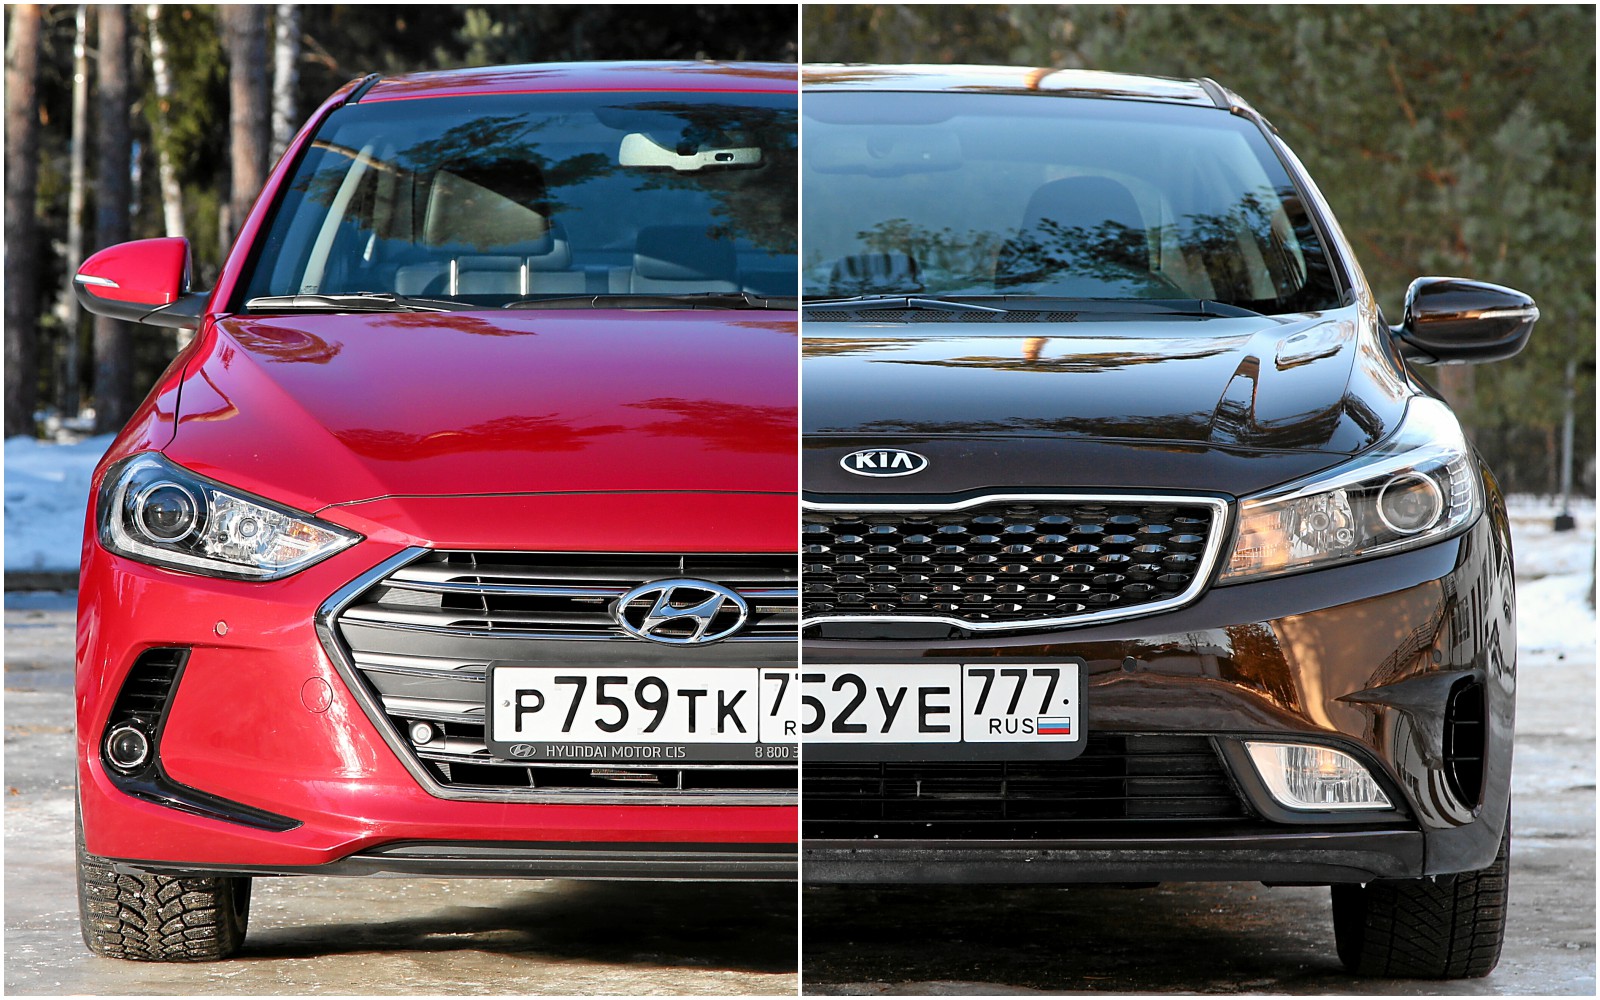  Hyundai Elantra і Kia Cerato - автомобілі в списку якісних б/вушок